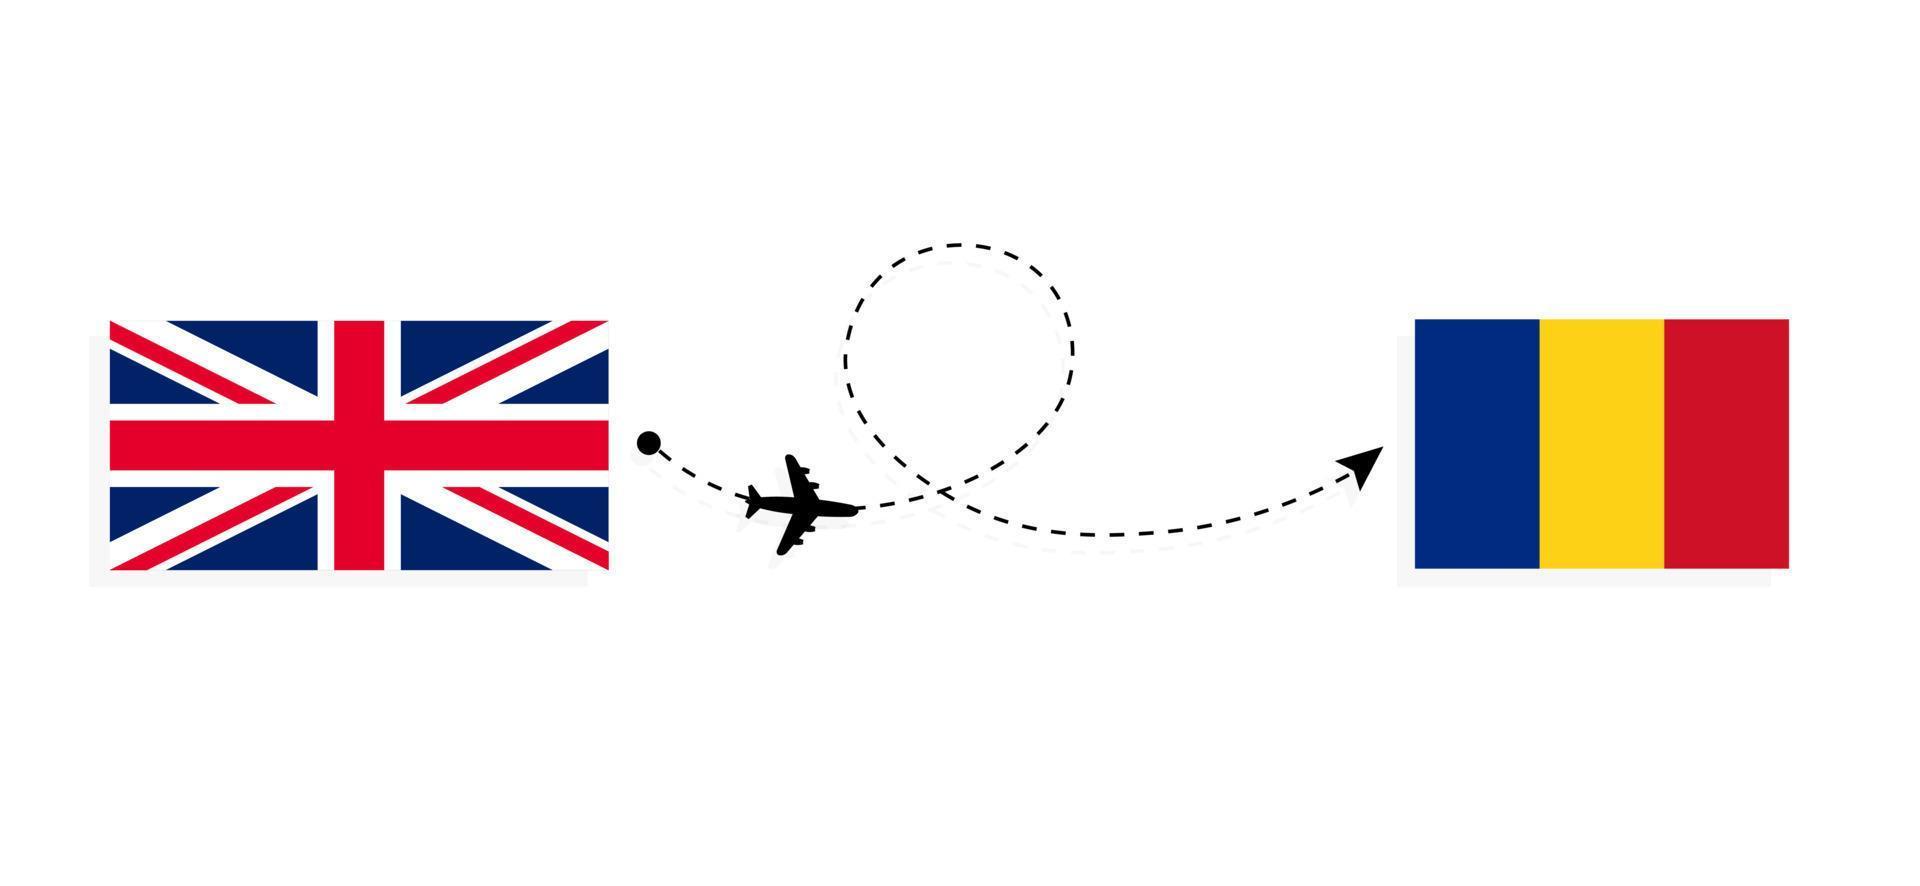 vol et voyage du royaume-uni de grande-bretagne à la roumanie par concept de voyage en avion de passagers vecteur